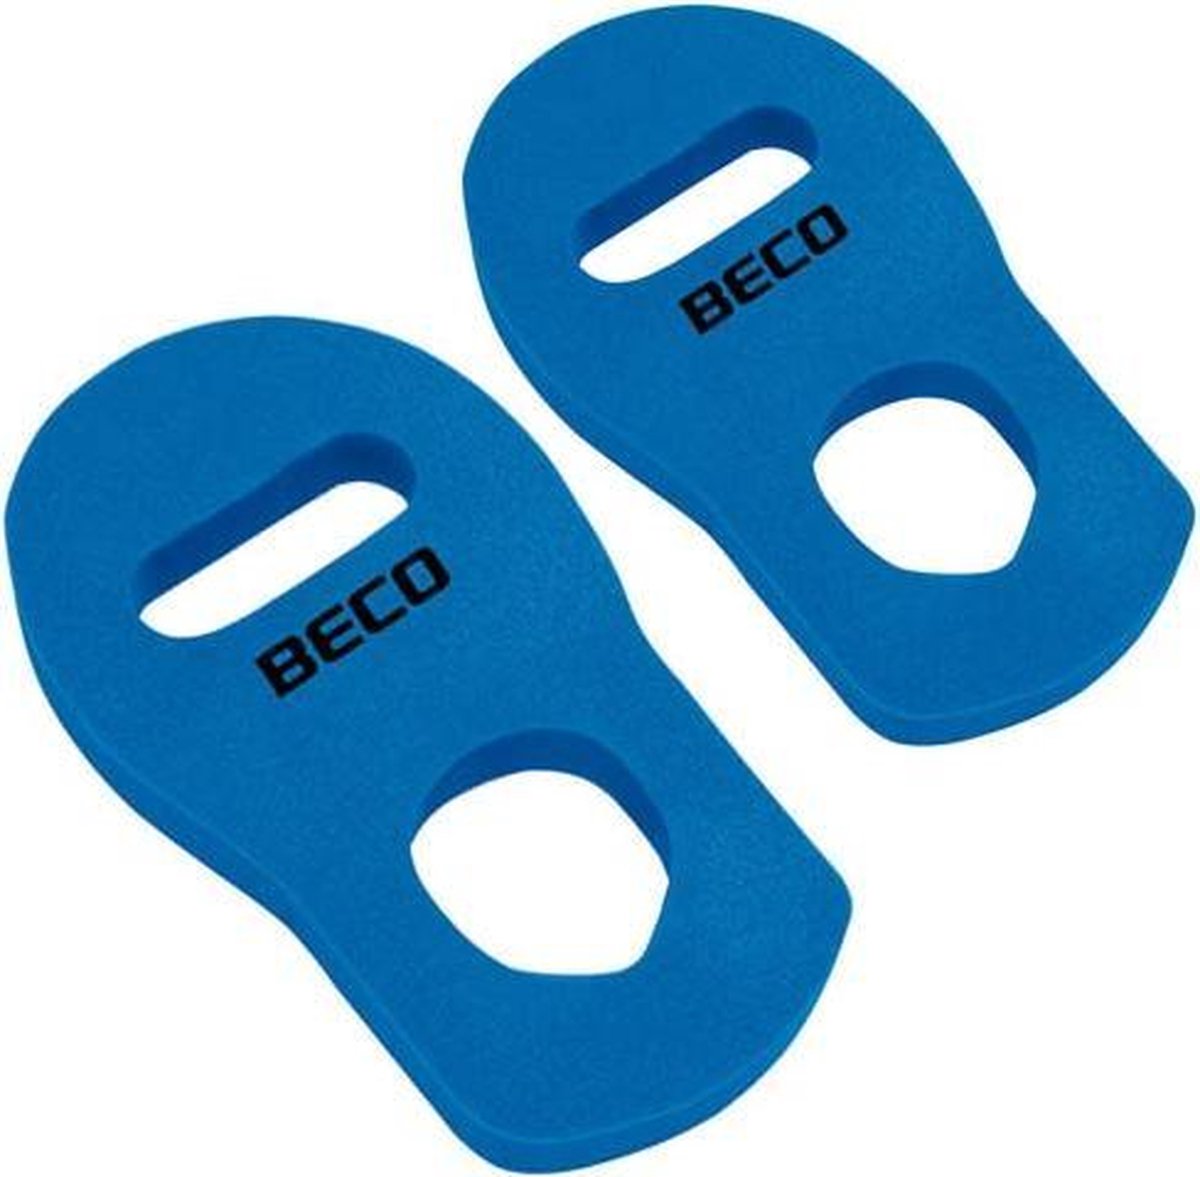 Beco Aqua-kickbox Handschoenen Blauw Maat L 2-delig - BECO